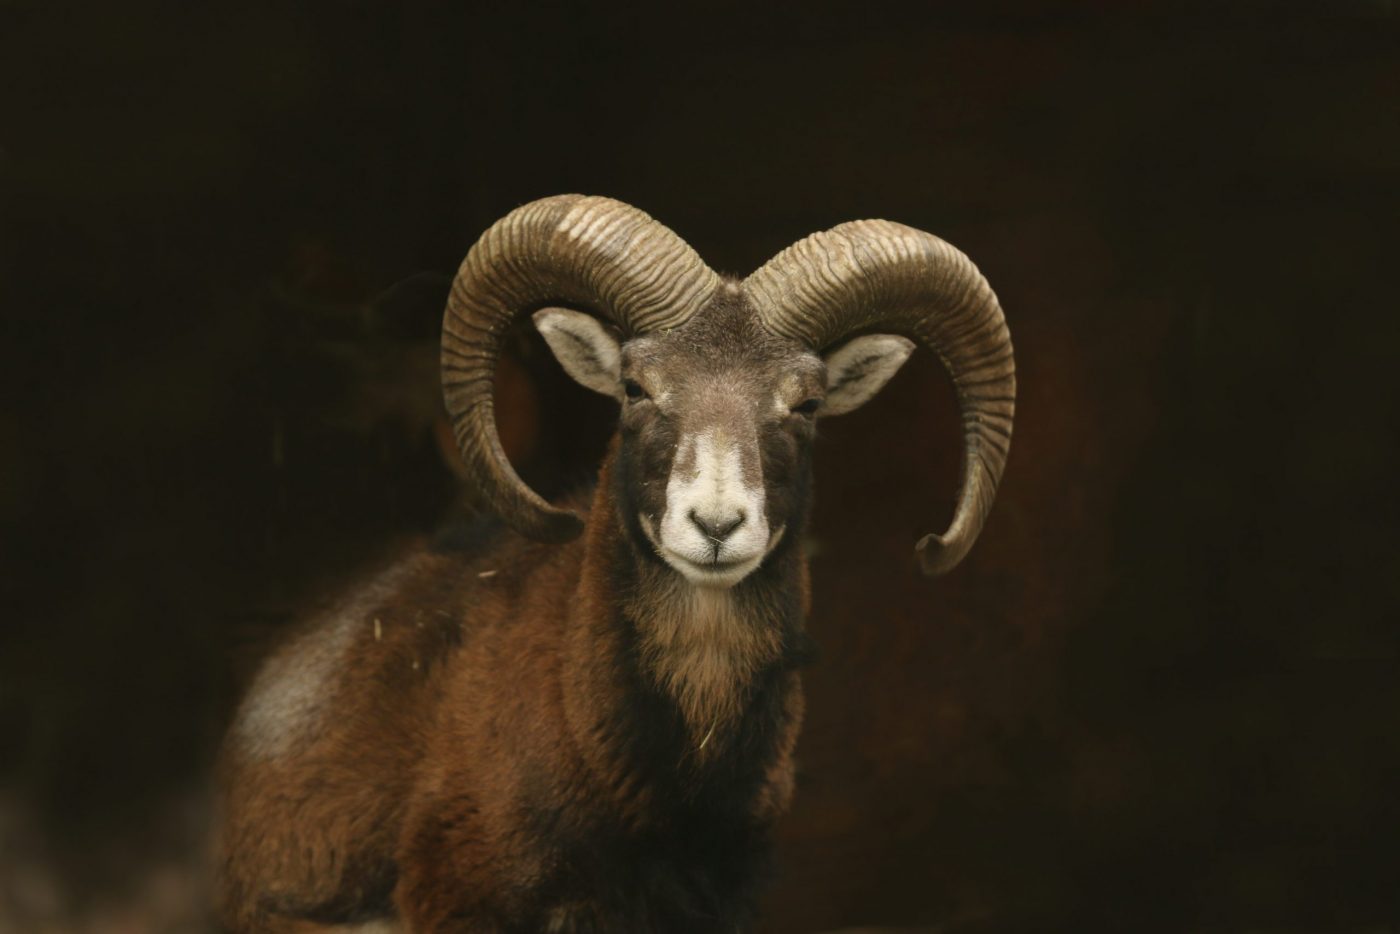 Mouflon (Ovis orientalis orientalis) close up portrait